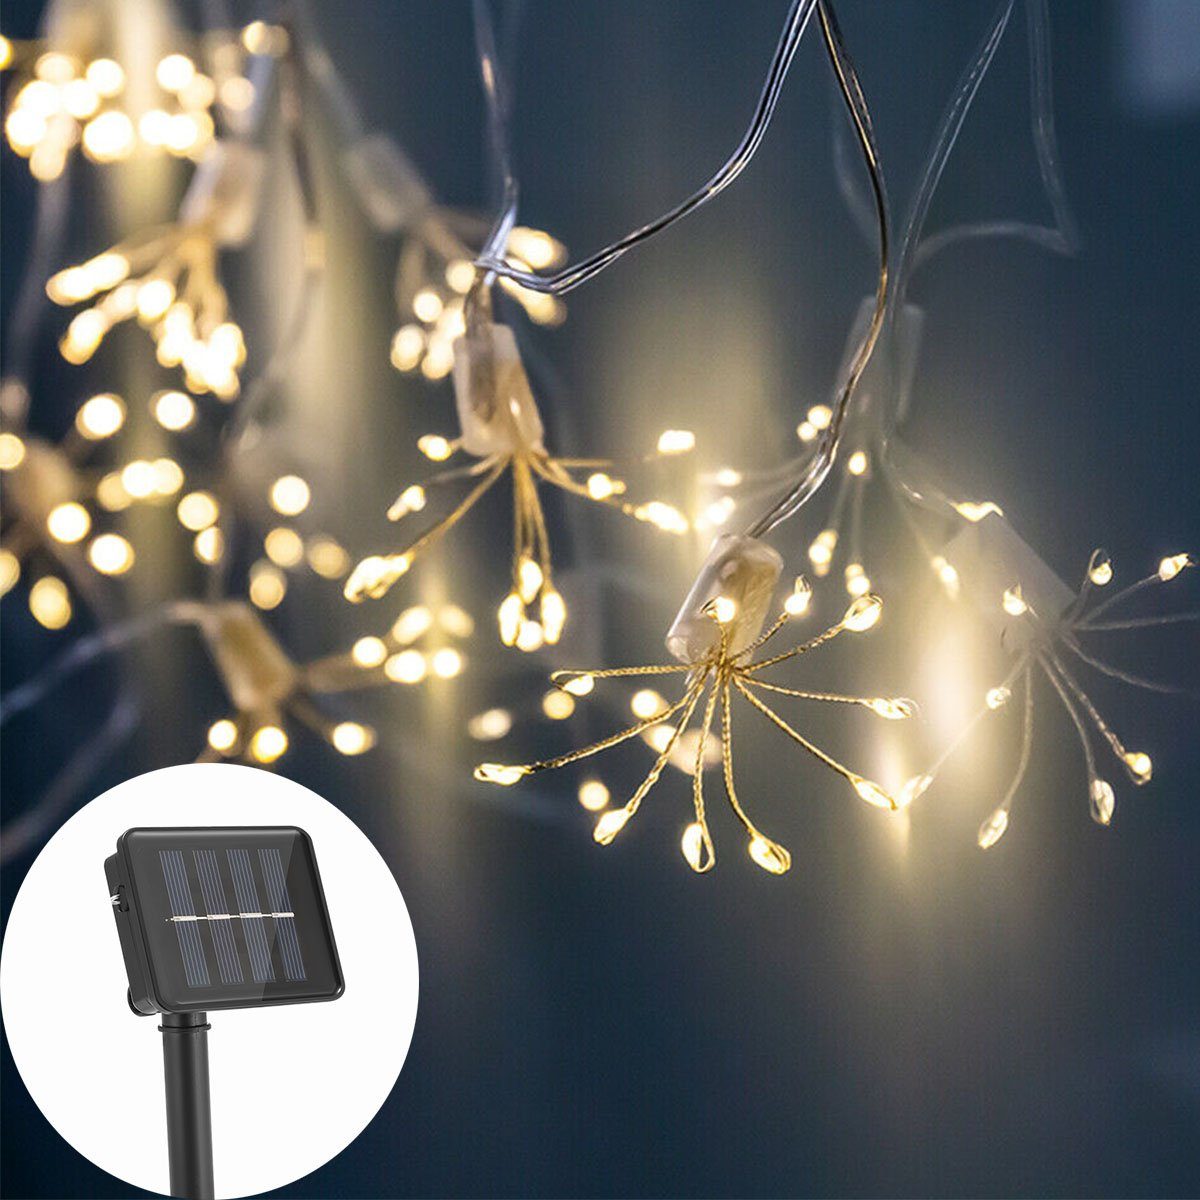 oyajia LED-Lichterkette 100 LEDs Solar Lichterkette Feuerwerk LED Kupfer Lichterkette, 8 Modi, Wasserdicht IP65 Solar Beleuchtung, Warmweiß 3000K Außen Garten